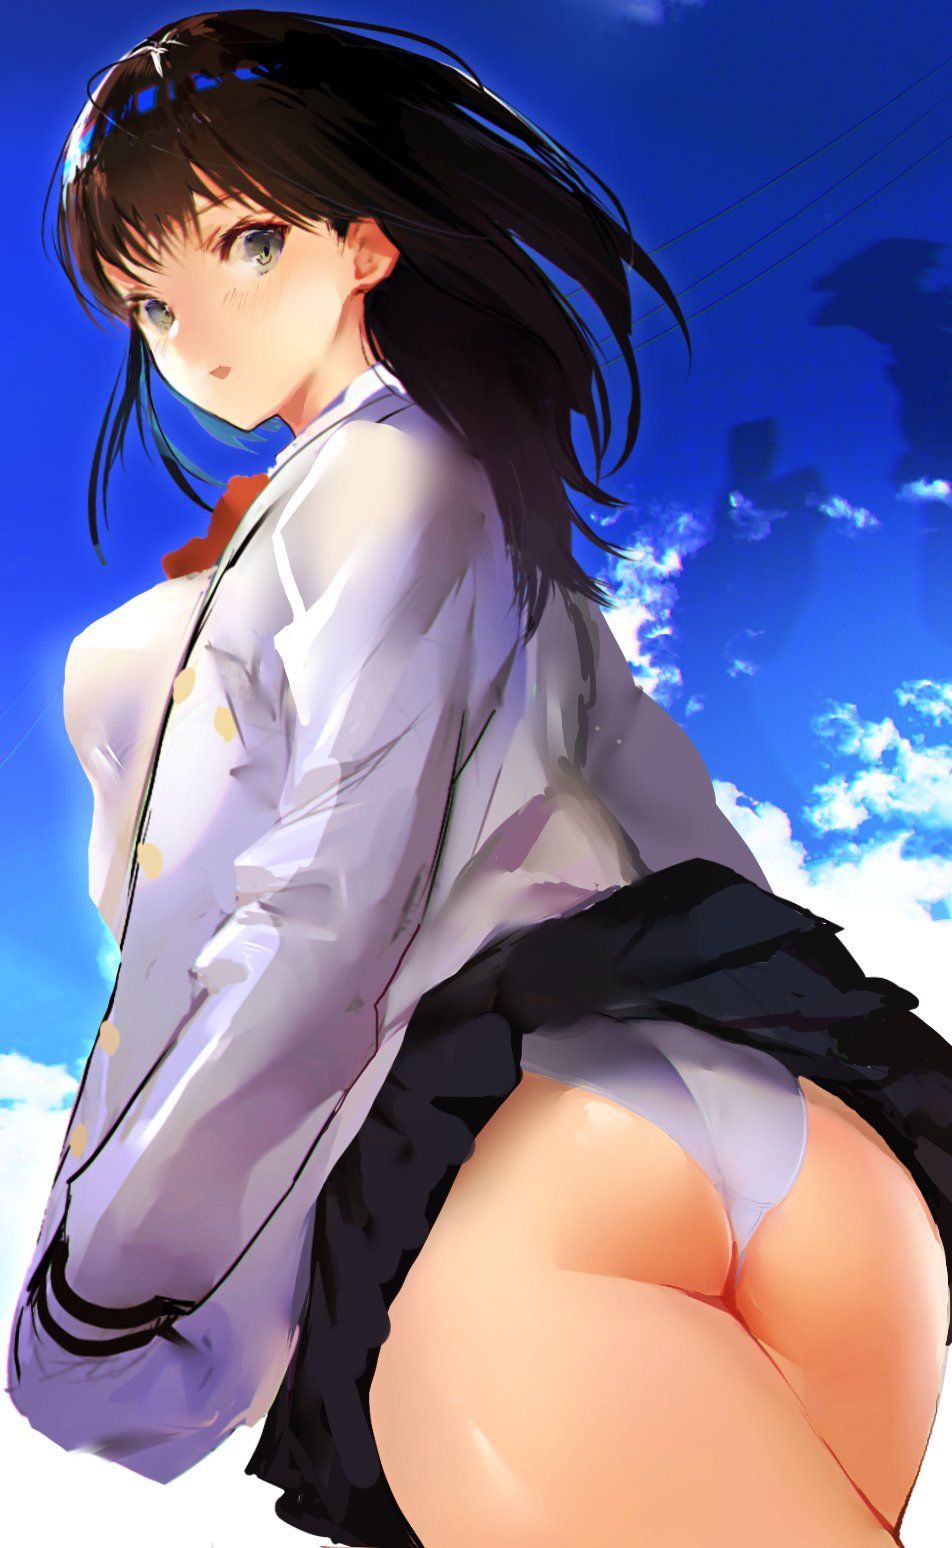 Erotic anime summary Black hair girls irresistibly and echi erotic image [secondary erotic] 14